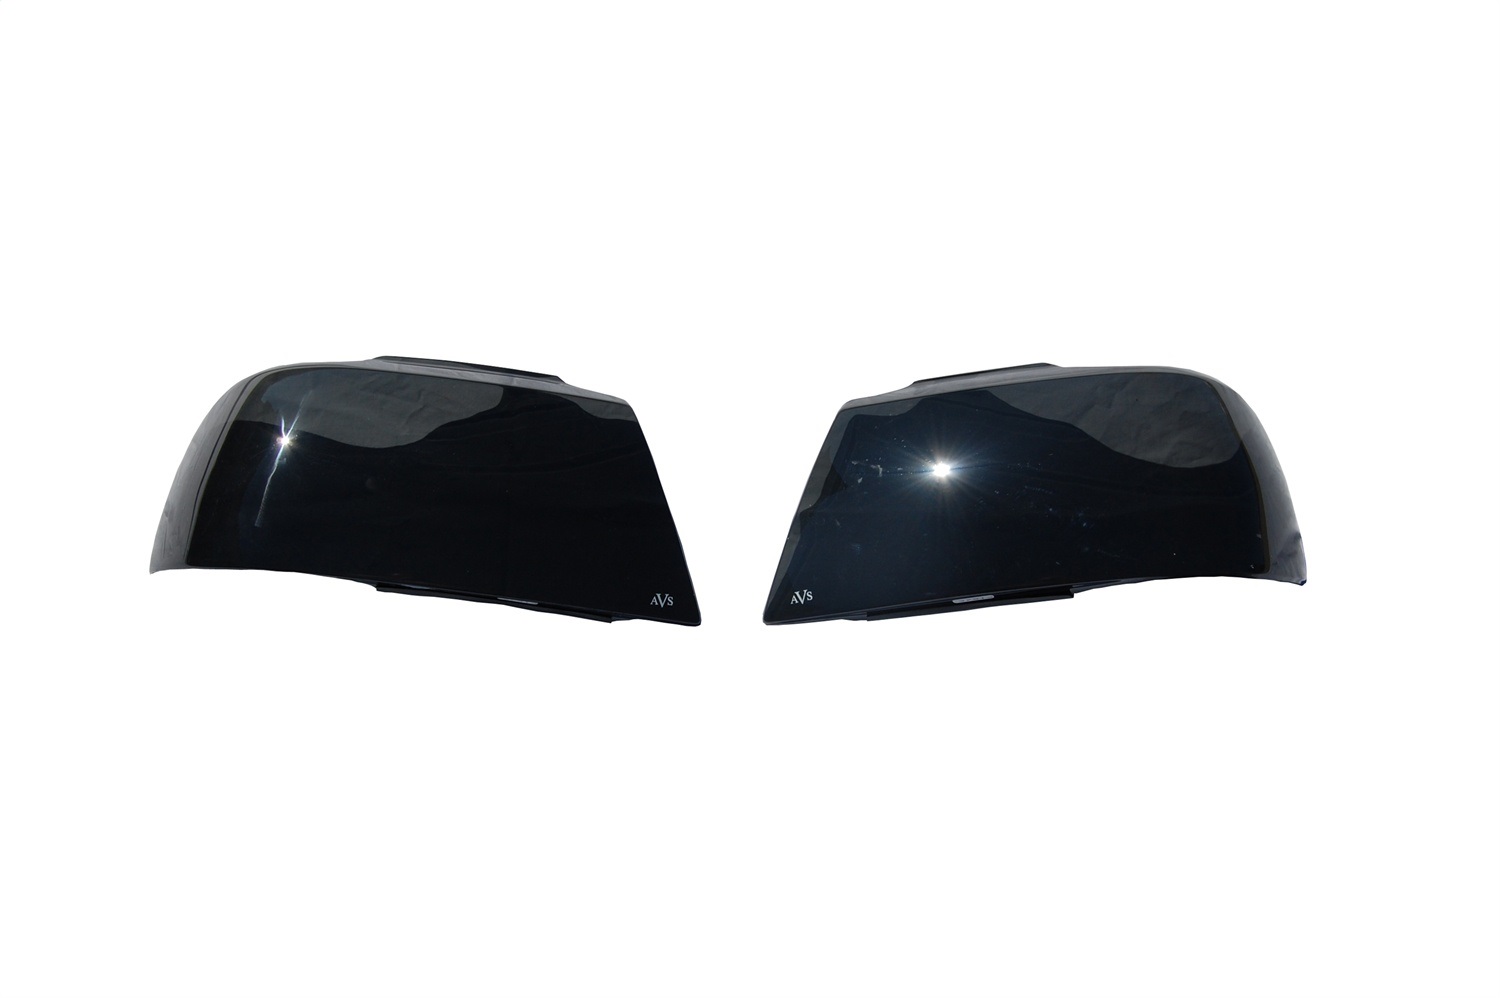 Auto Ventshade Auto Ventshade 37922 Headlight Covers Fits 00-05 Monte Carlo